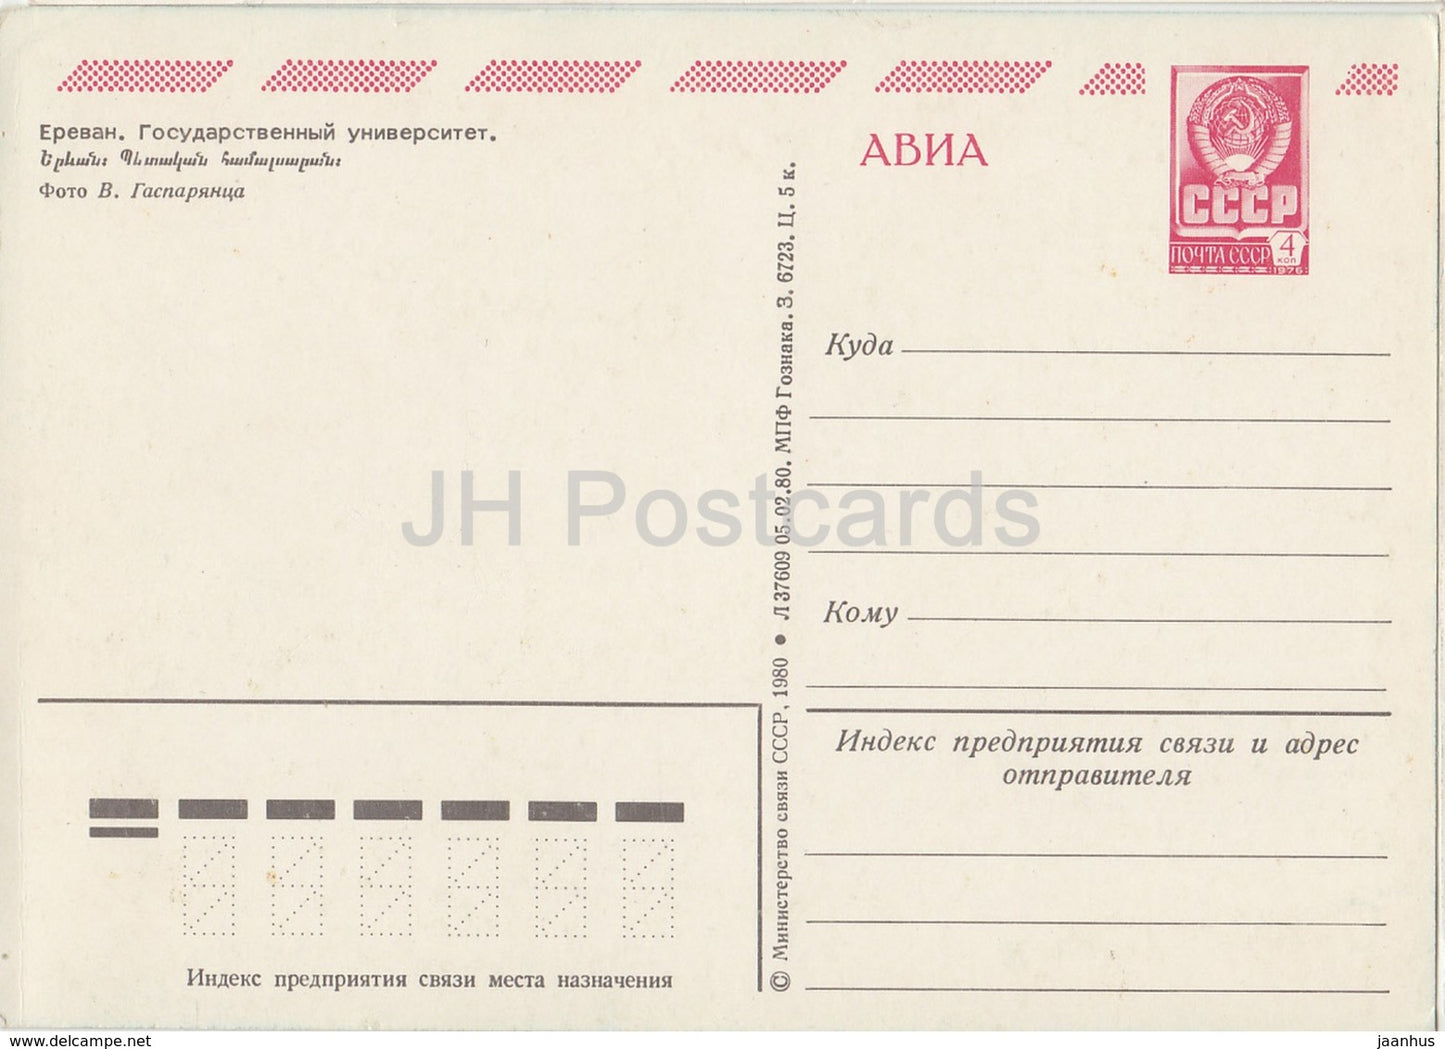 Yerevan - state University - AVIA - postal stationery - 1980 - Armenia USSR -  unused